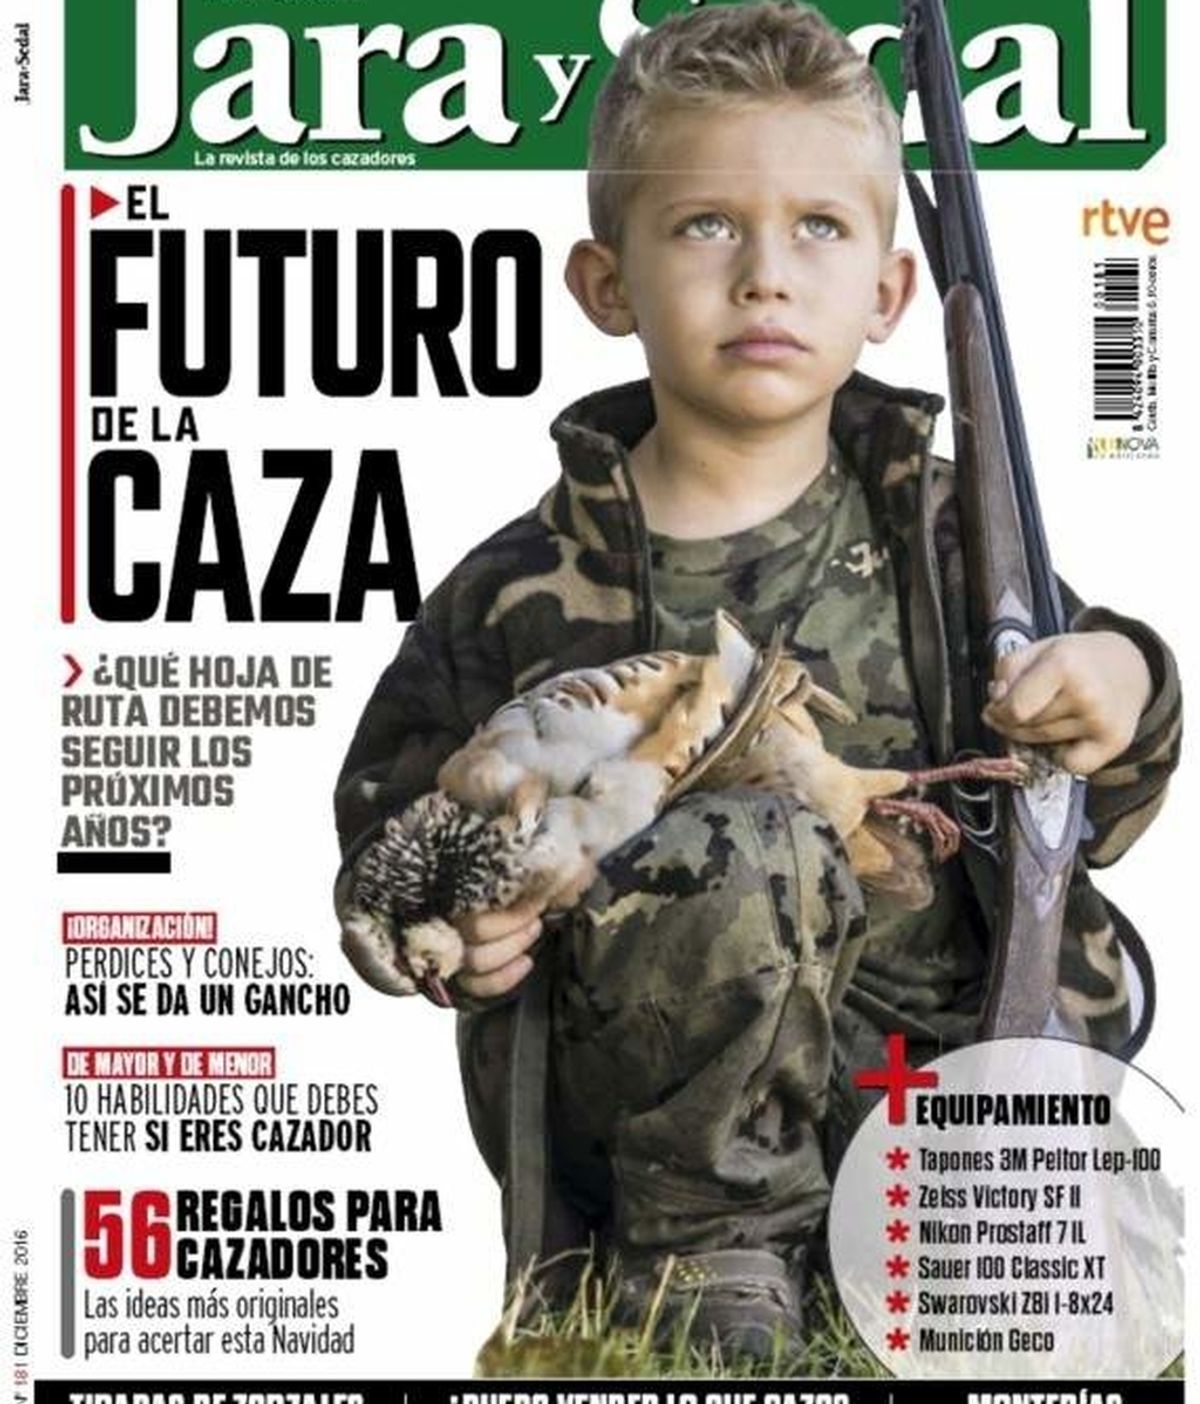 Polémica portada de la revista 'Jara y sedal'